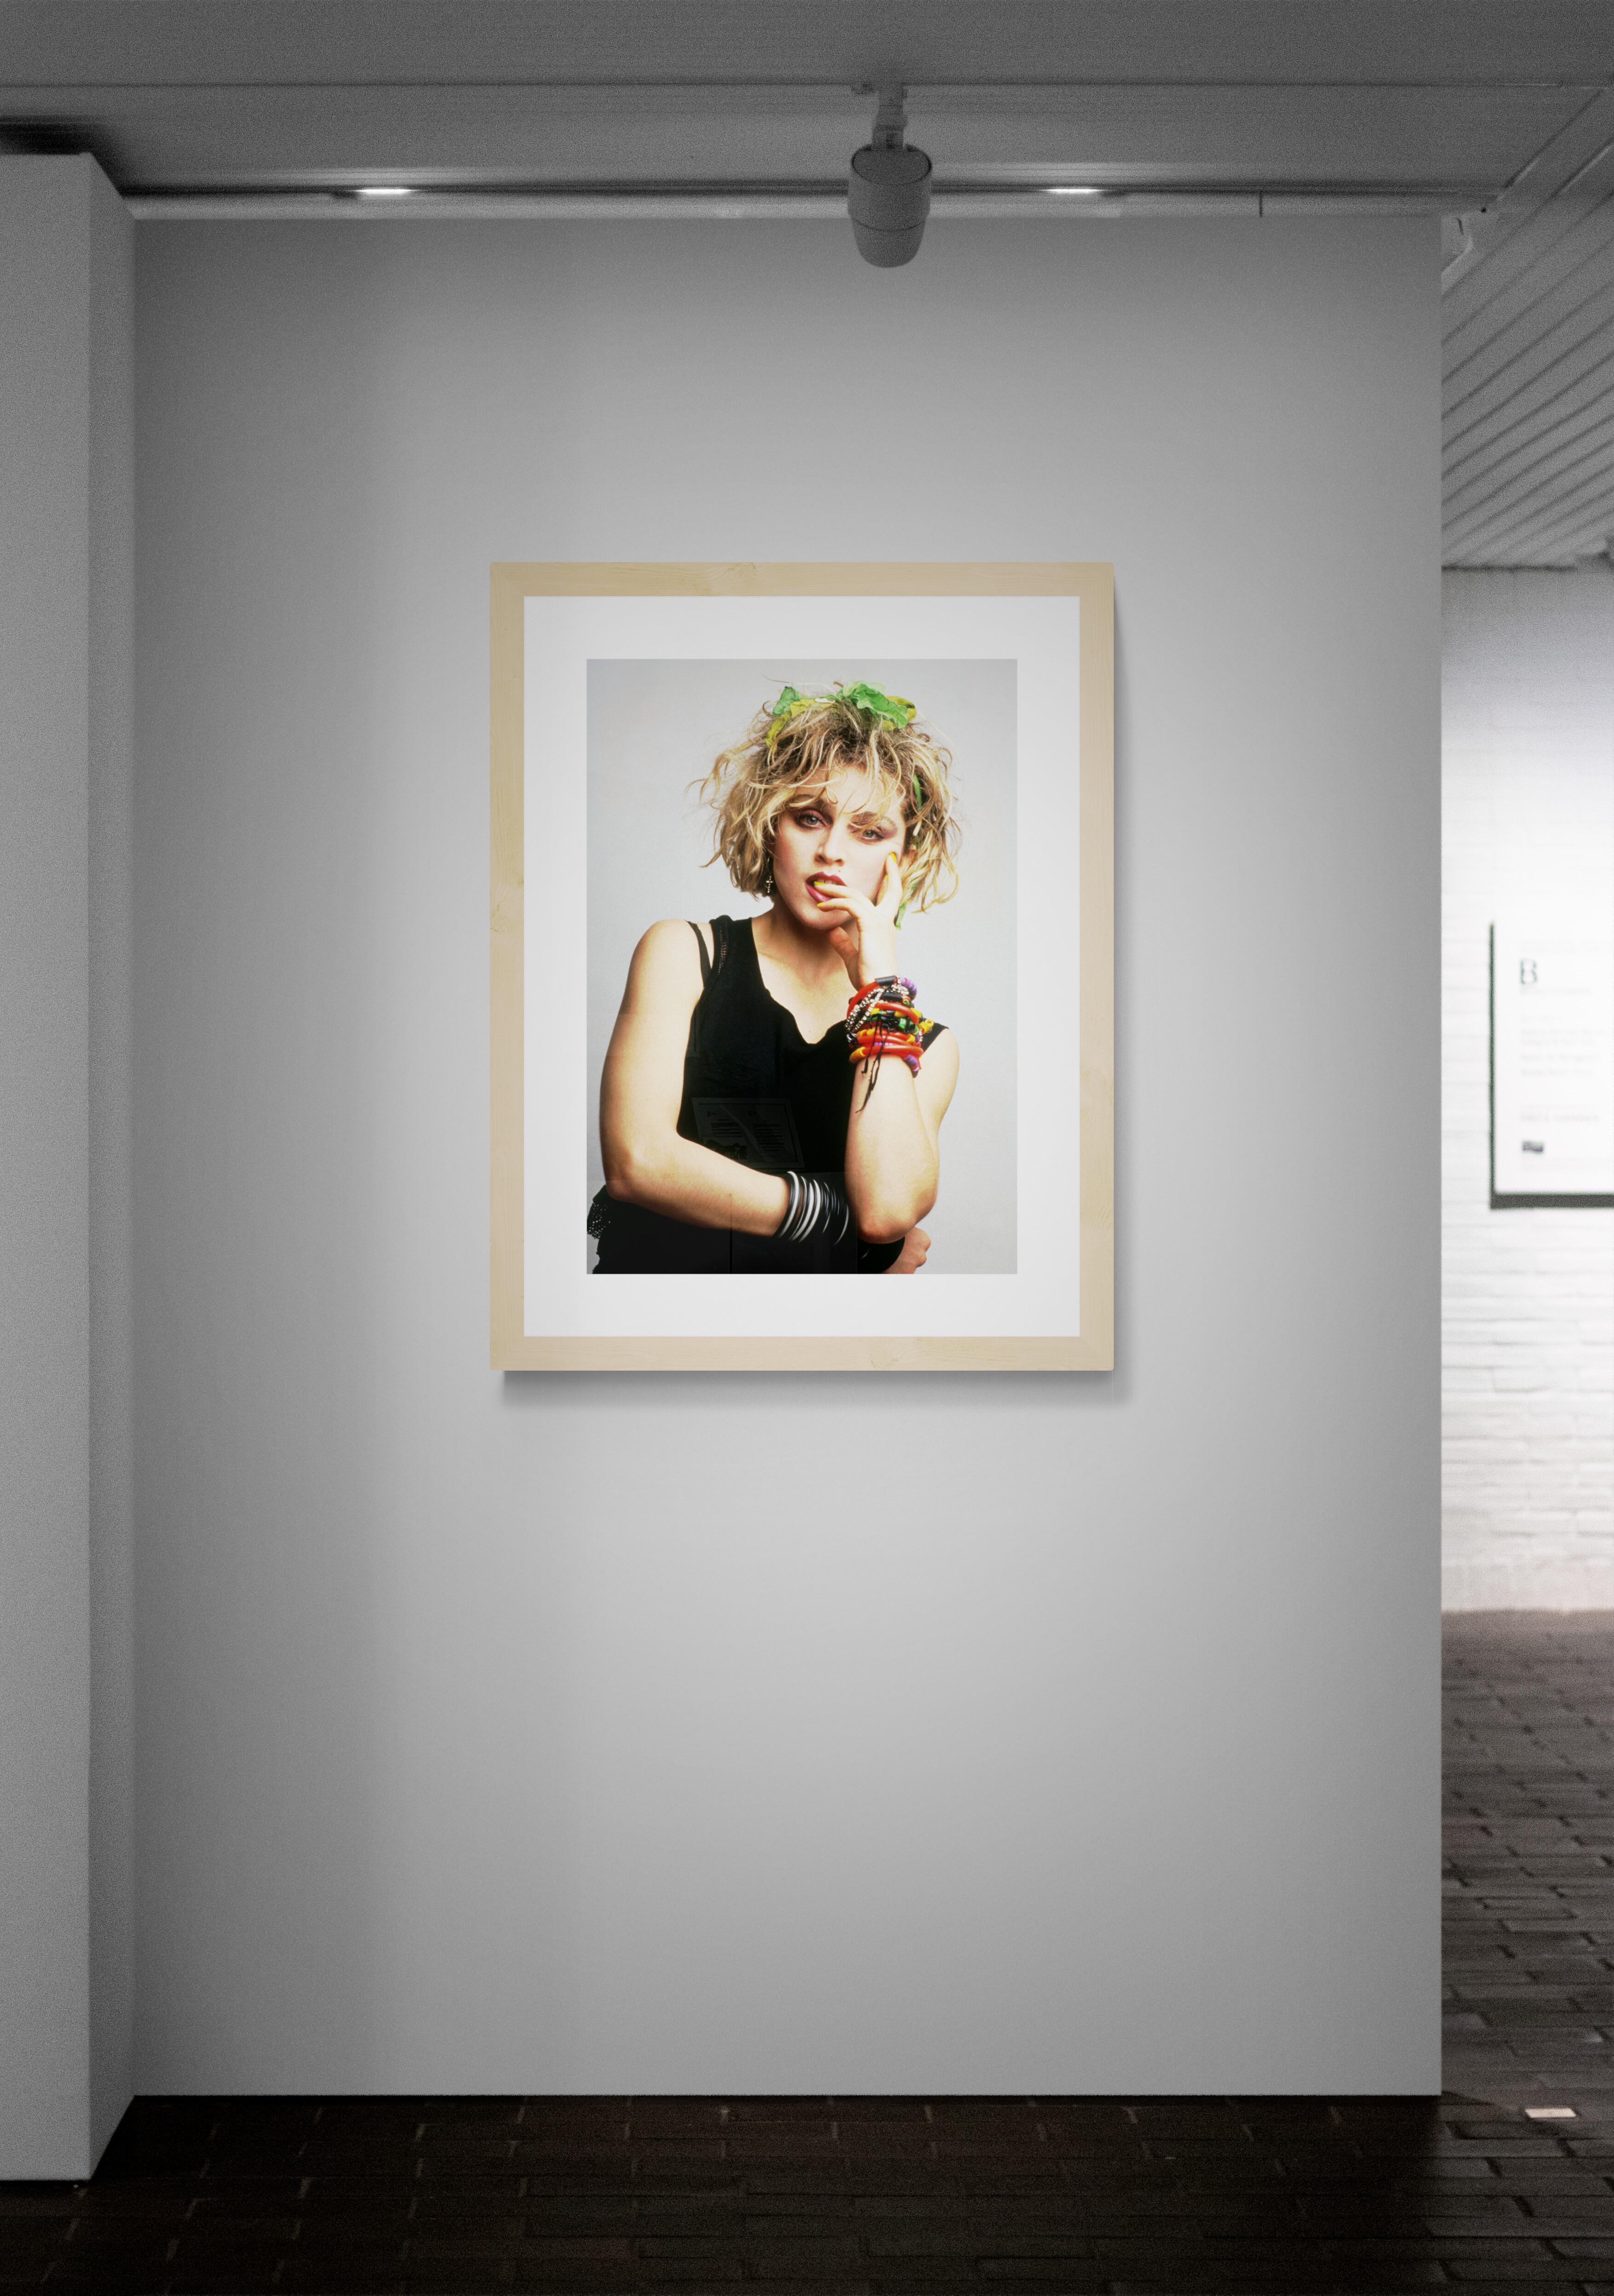 Titel: Madonna #1
Künstler: Richard E. Aaron
Nachlass-Edition: Handnummeriert mit Nachlassstempel im Rand, Signaturstempel auf der Rückseite, Pigmentdruck auf Hahnemühle Photo Rag Pearl, 100% Baumwollpapier, Kunstdruckpapier. Autorisierte weltweite